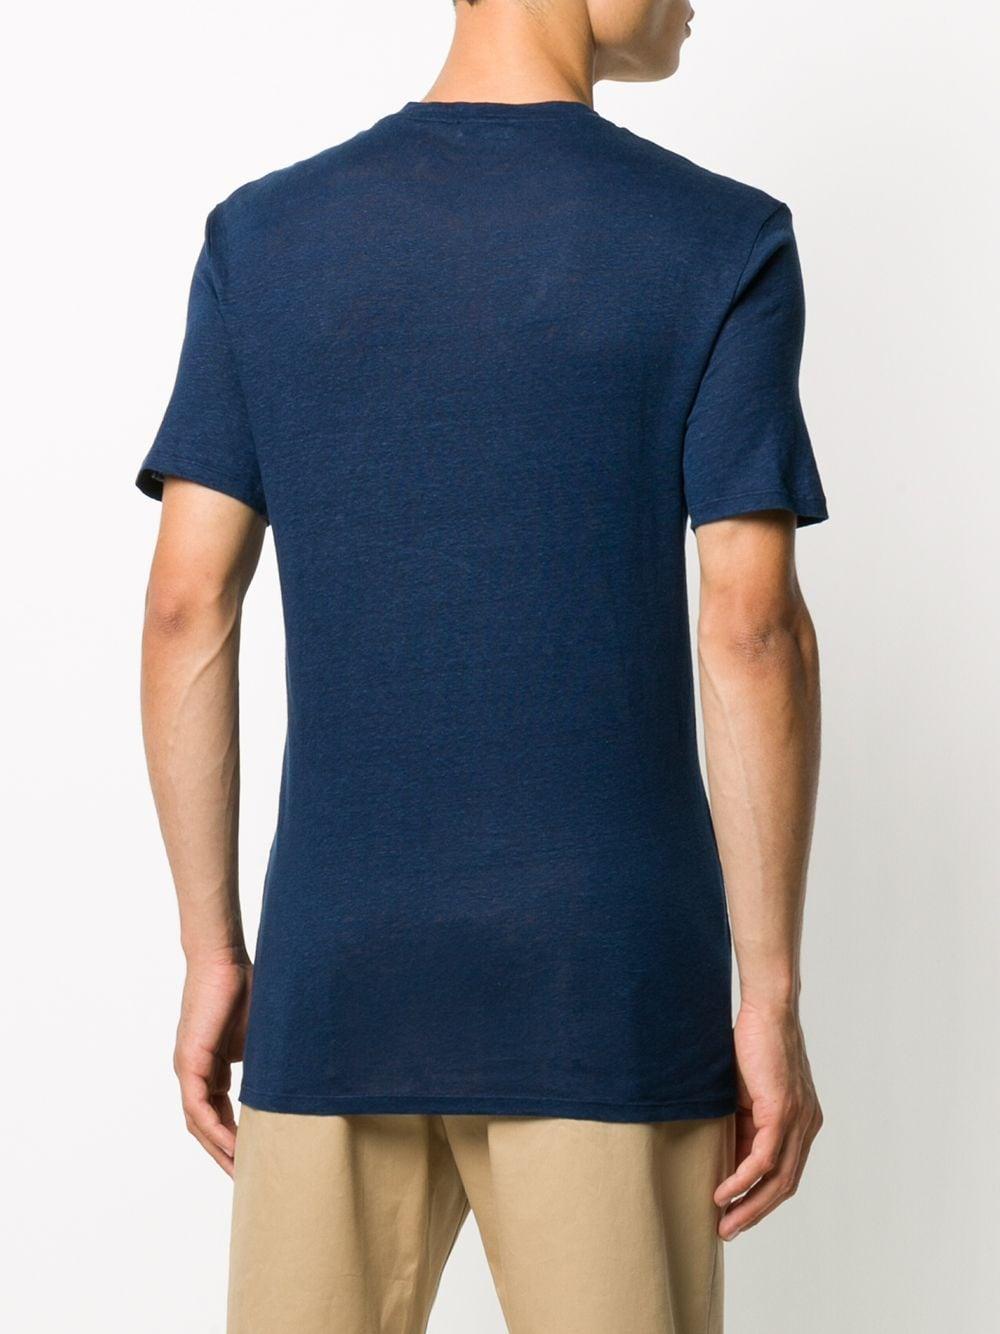 Sandro Round Neck Linen T-shirt in Blue for Men - Lyst